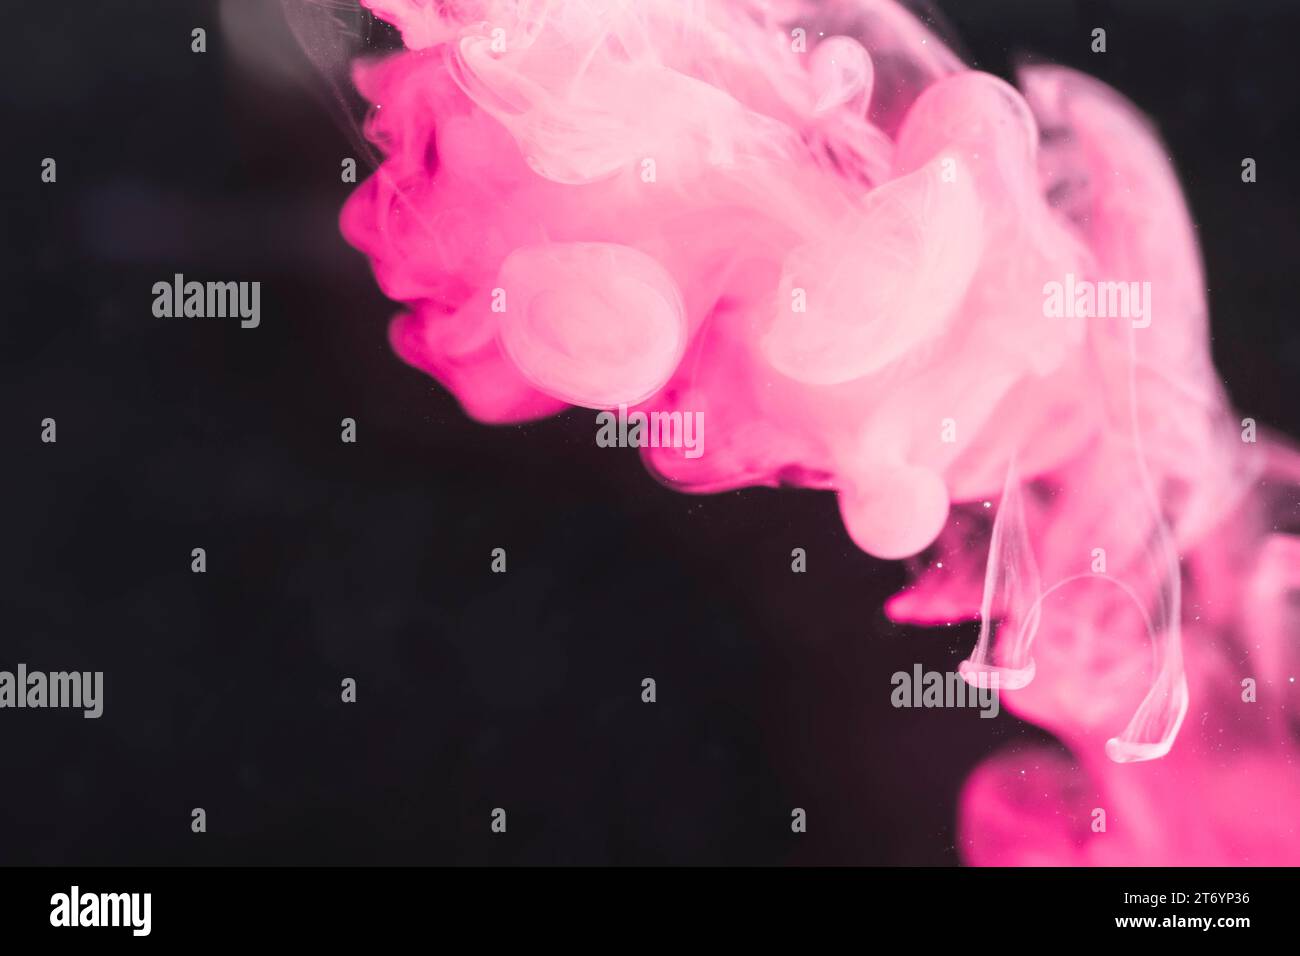 Écran noir fumée rose artistique puissant Banque D'Images